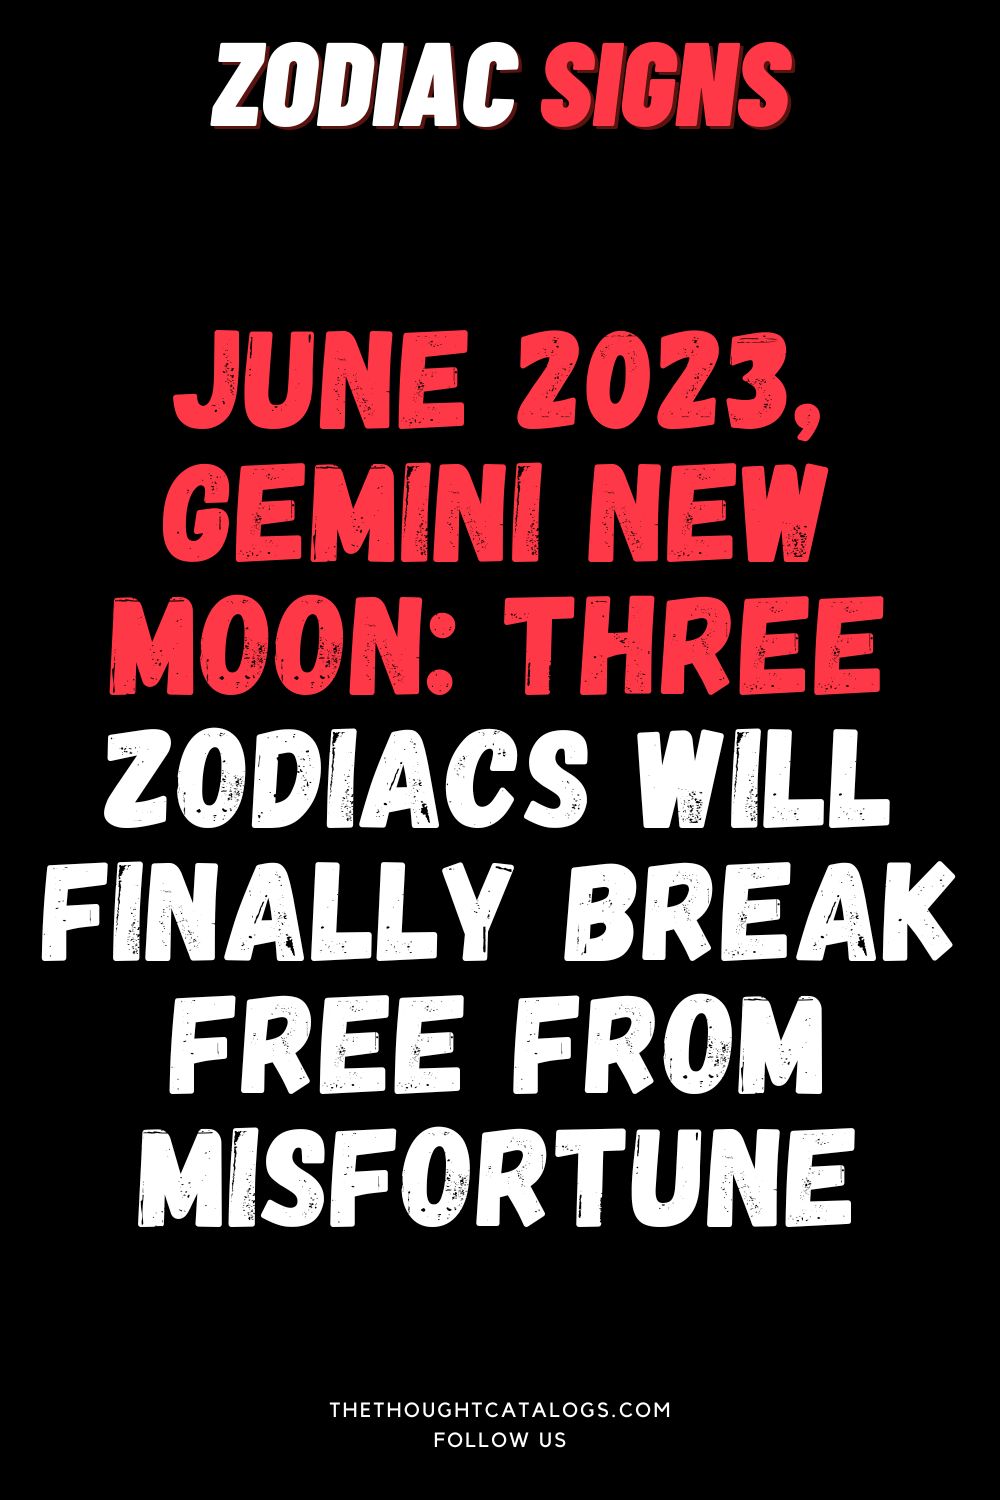 Gemini New Moon: Three Zodiacs Will Finally BreakJune 2023